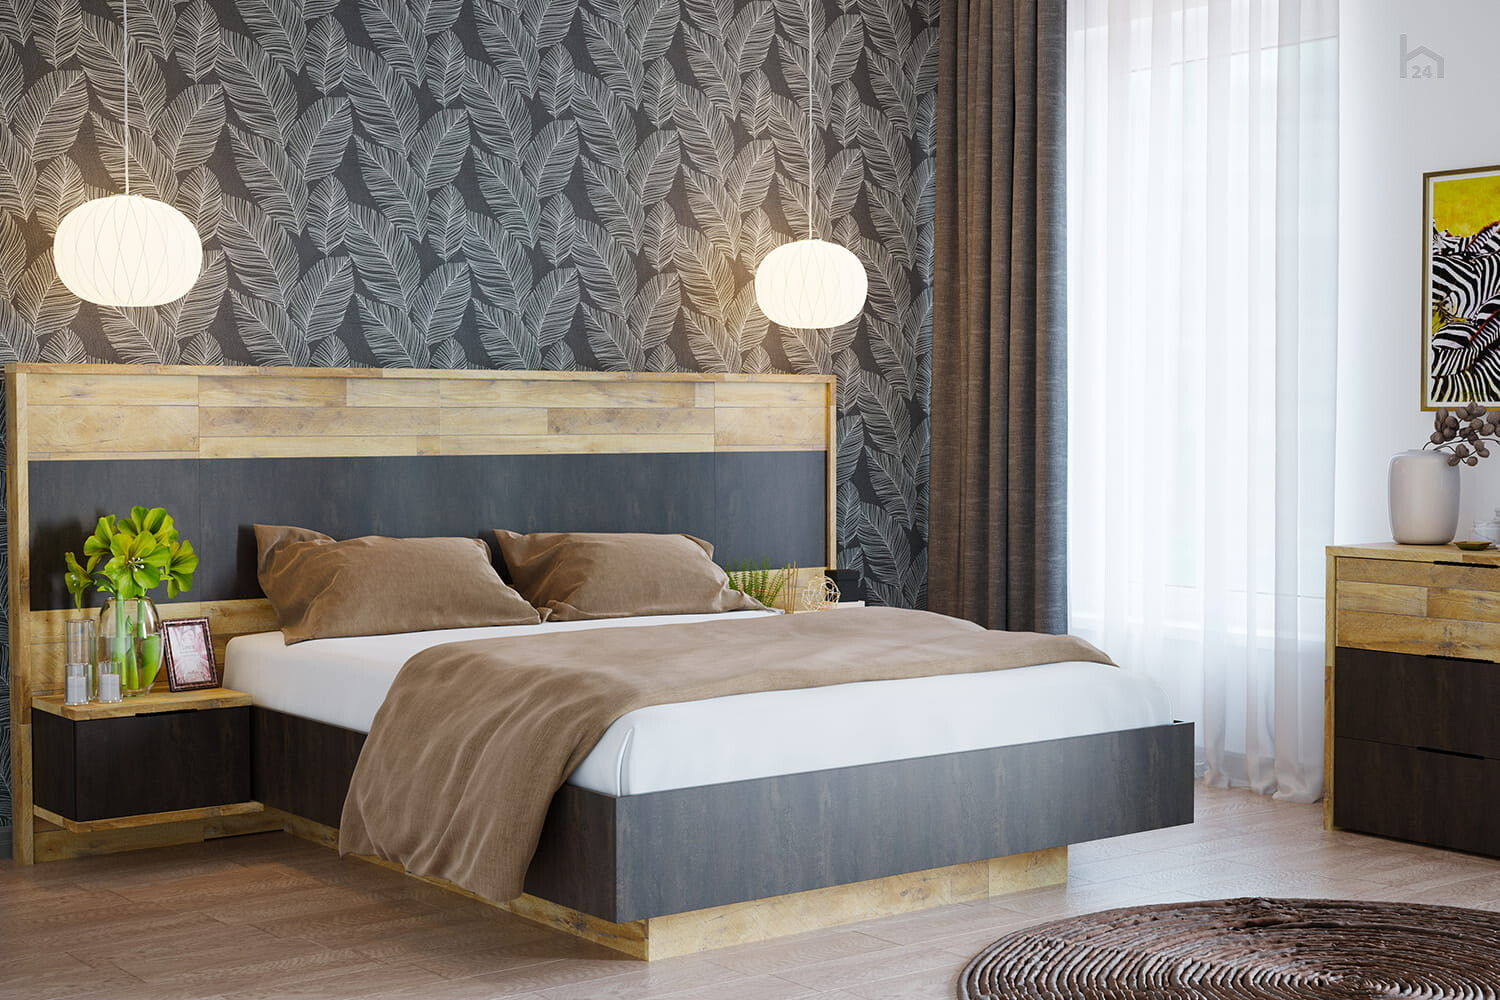 Двуспальная кровать – большой выбор в интернет-магазине barin.ua